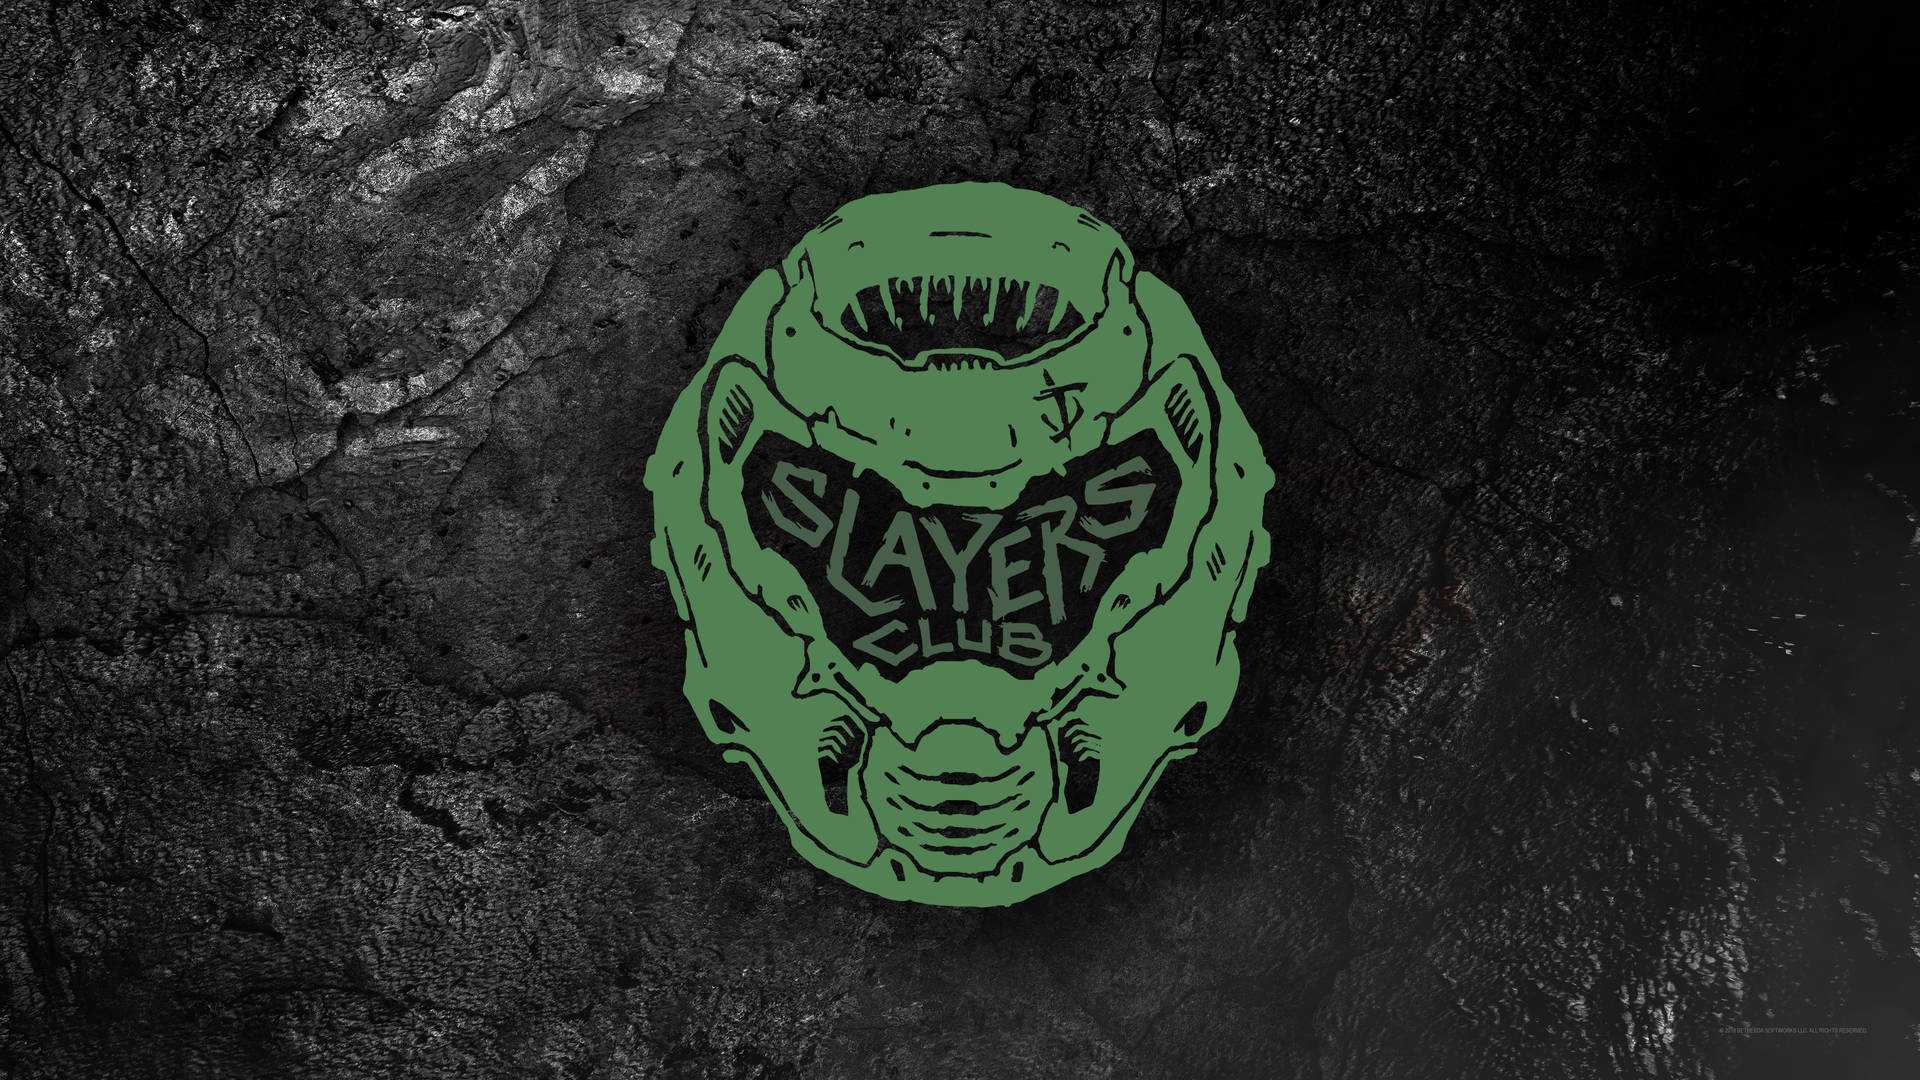 Slayers Club Doom 4k Background